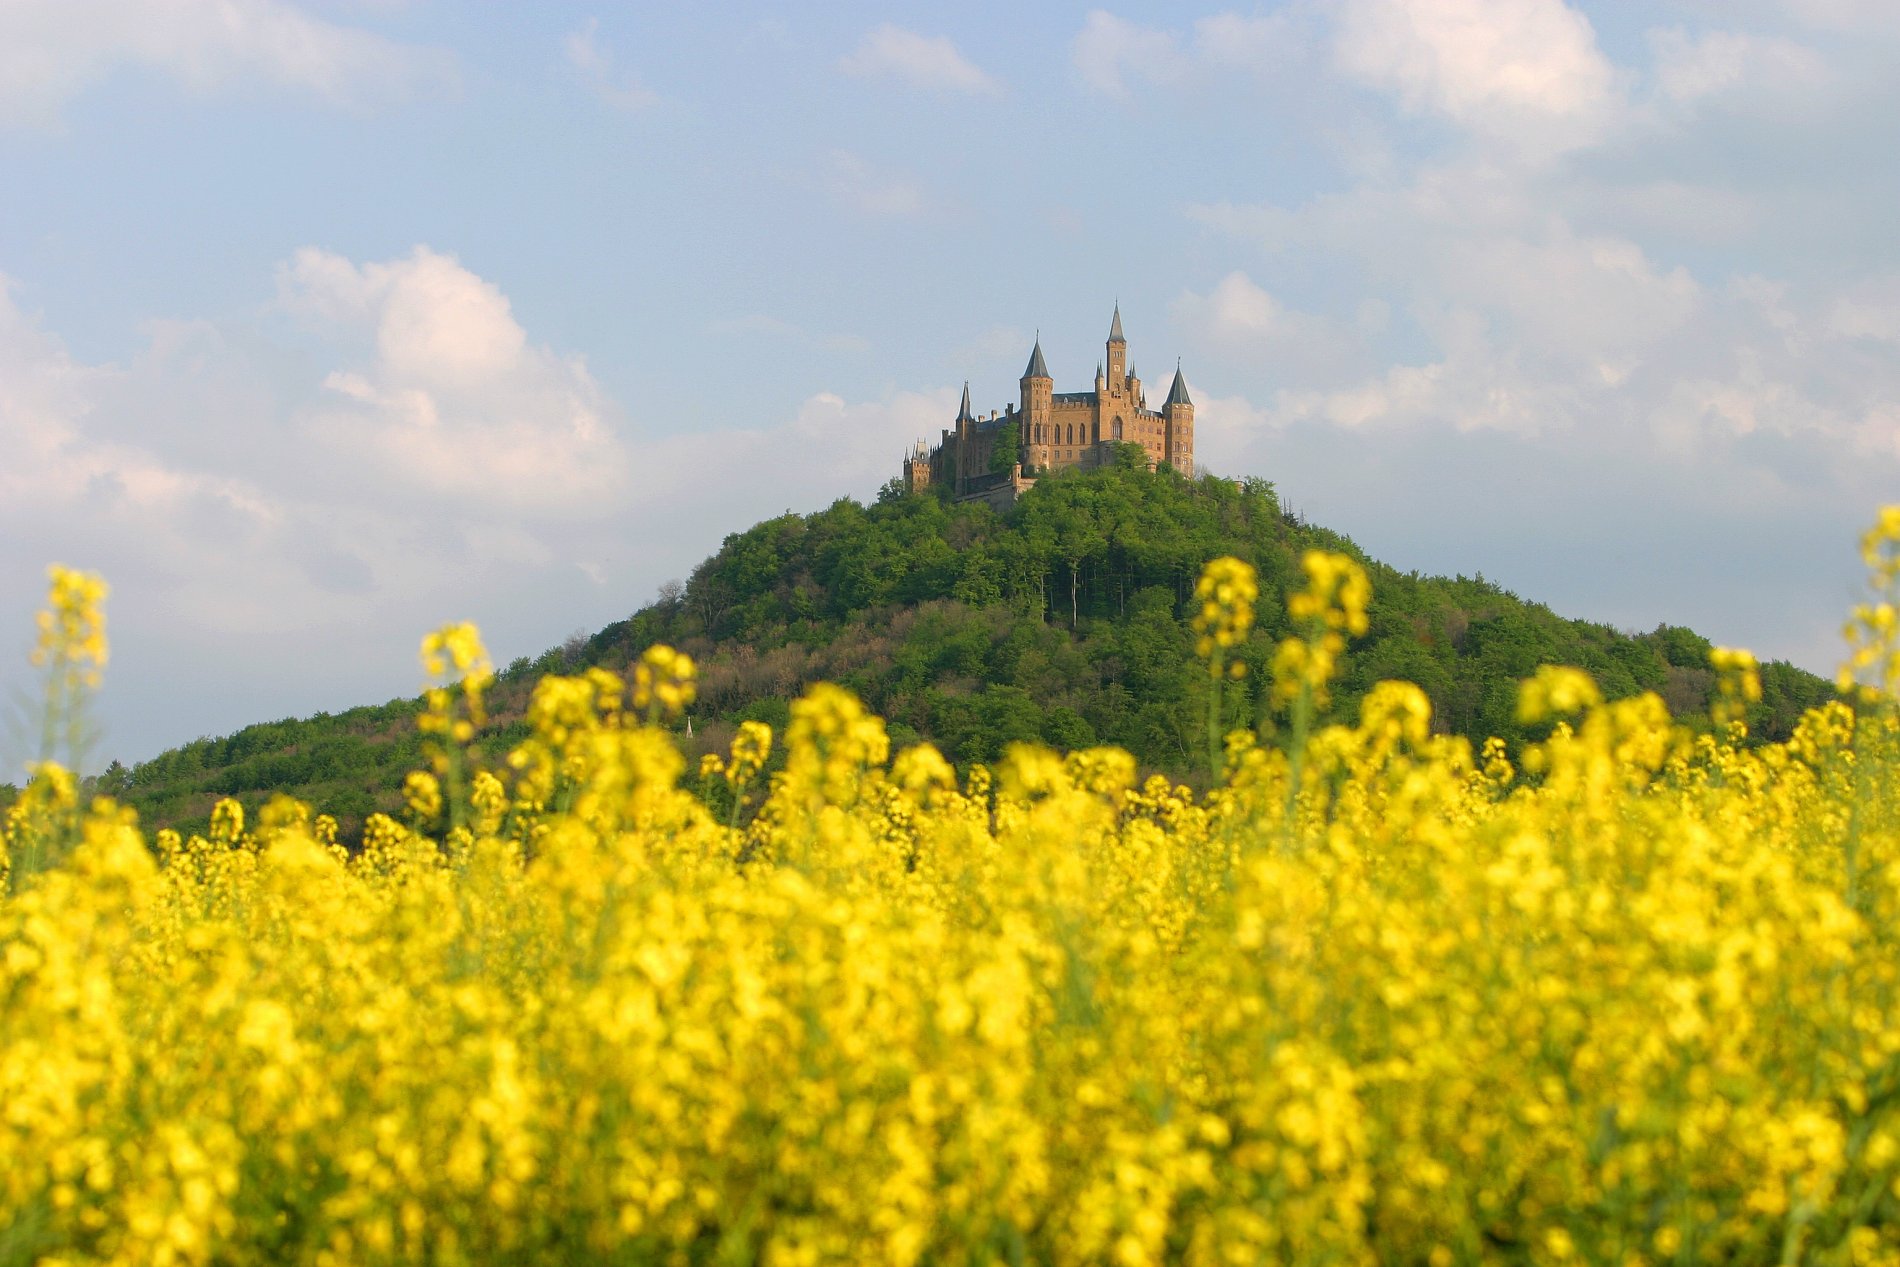 Blühendes Rapsfeld mit der Burg Hohenzollern im Hintergrund